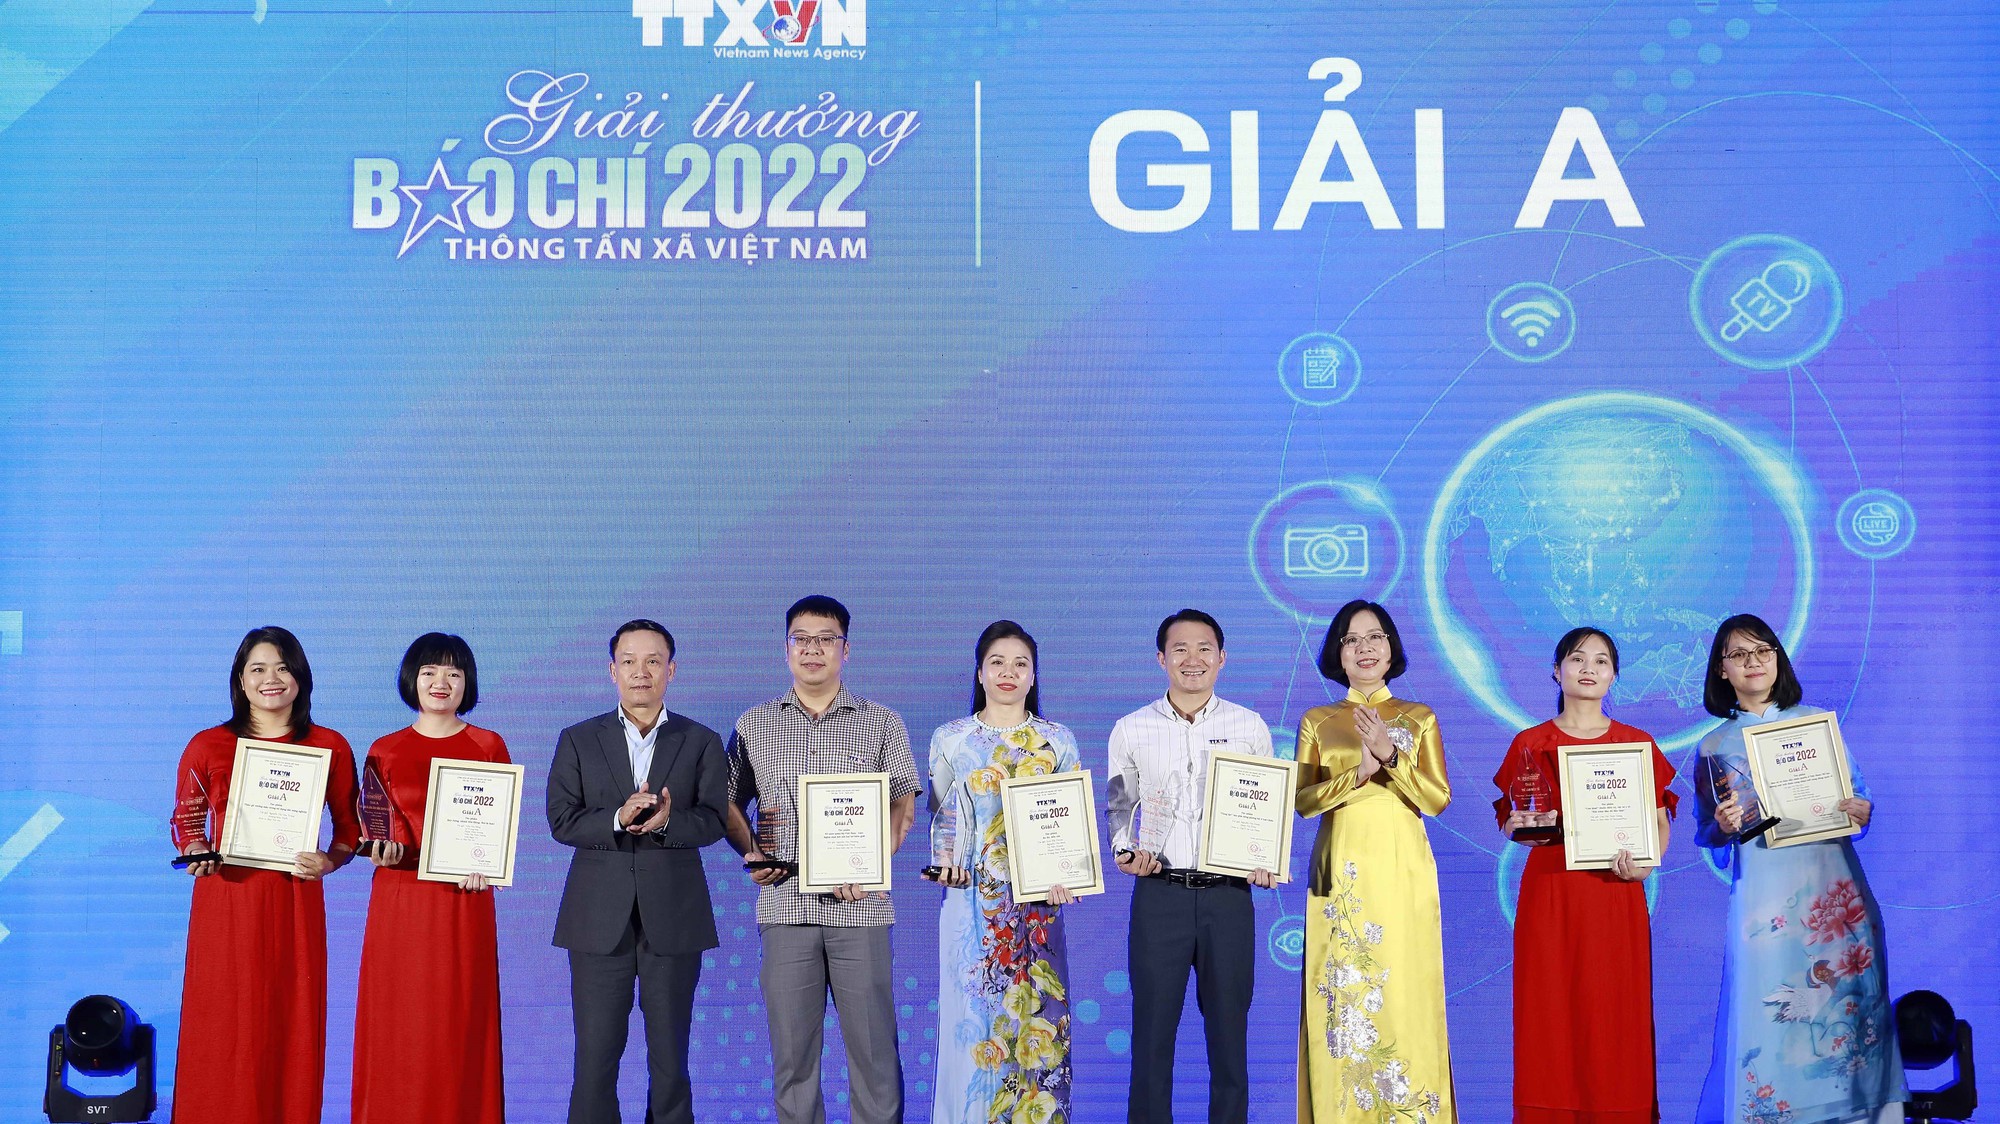 Giải thưởng Báo chí TTXVN 2022: Khẳng định vai trò của cơ quan Thông tấn Quốc gia